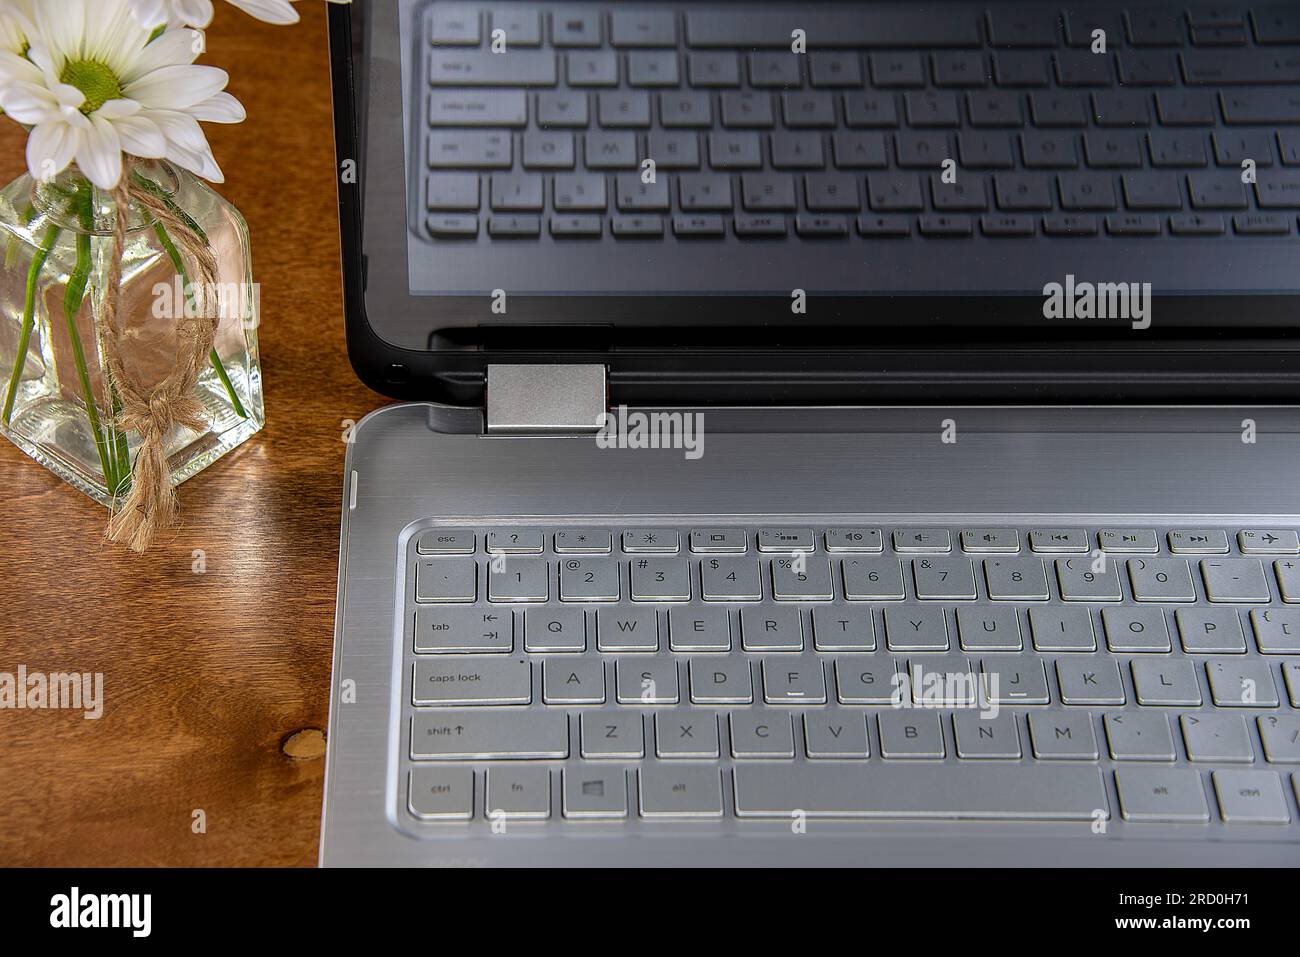 Nahaufnahme einer Laptop-Computer-Tastatur auf einem hölzernen Schreibtisch mit Gänseblümchen in einer Glasvase Stockfoto